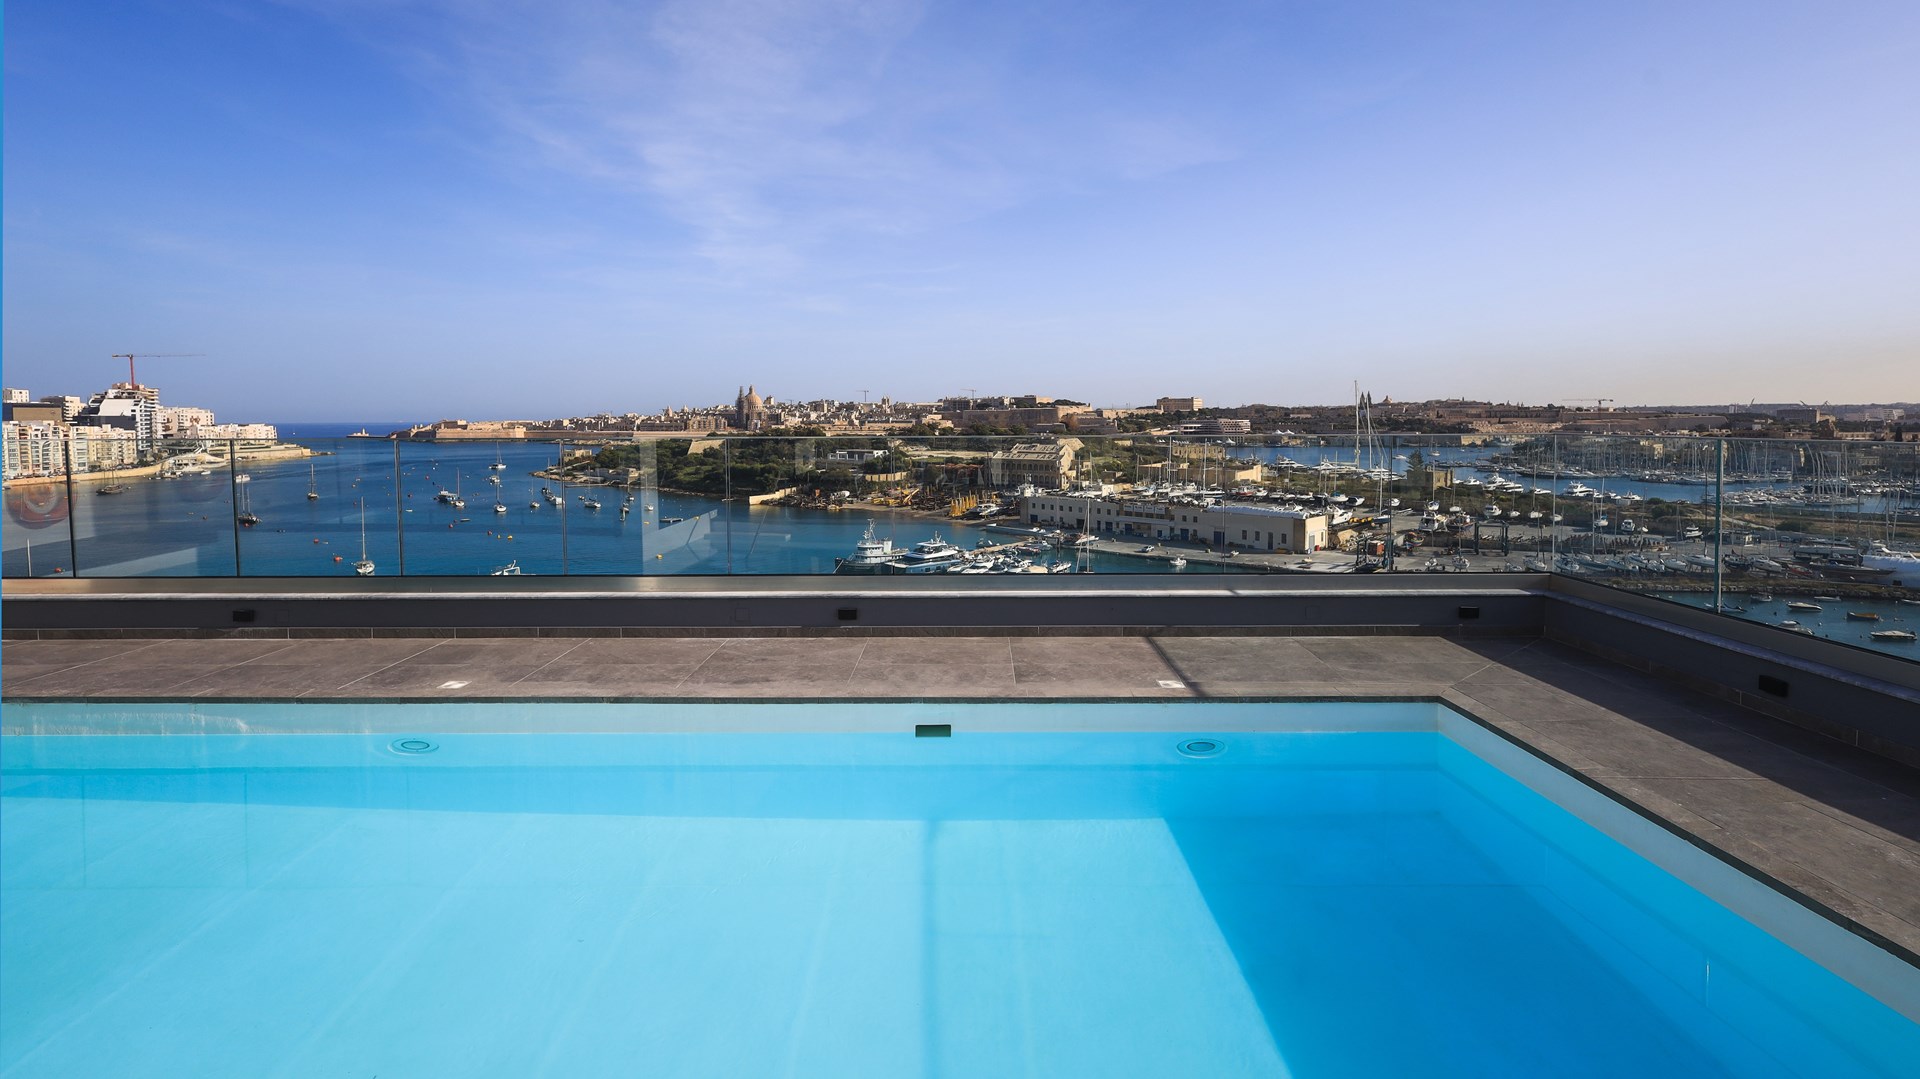 De ideale uitvalsbasis na een dag vol eilandavonturen  Hotel Verdi Malta